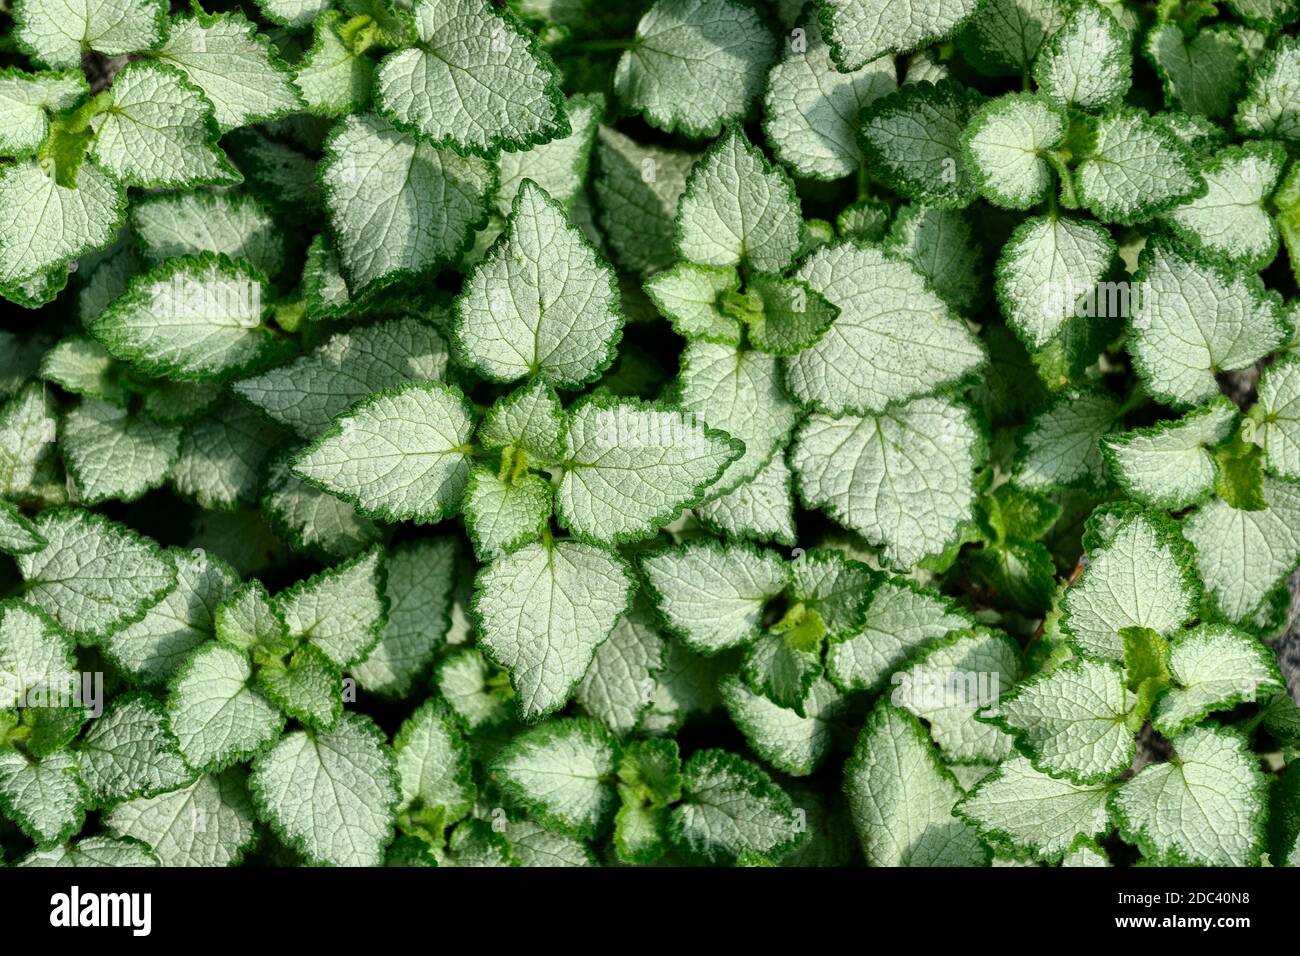 Silbrig weiß mit grünen Rändern Blätter von Lamium maculatum - natürlicher Hintergrund. Lamium kann schöne Dekoration von jedem Garten oder Park, alpine Rutsche Stockfoto